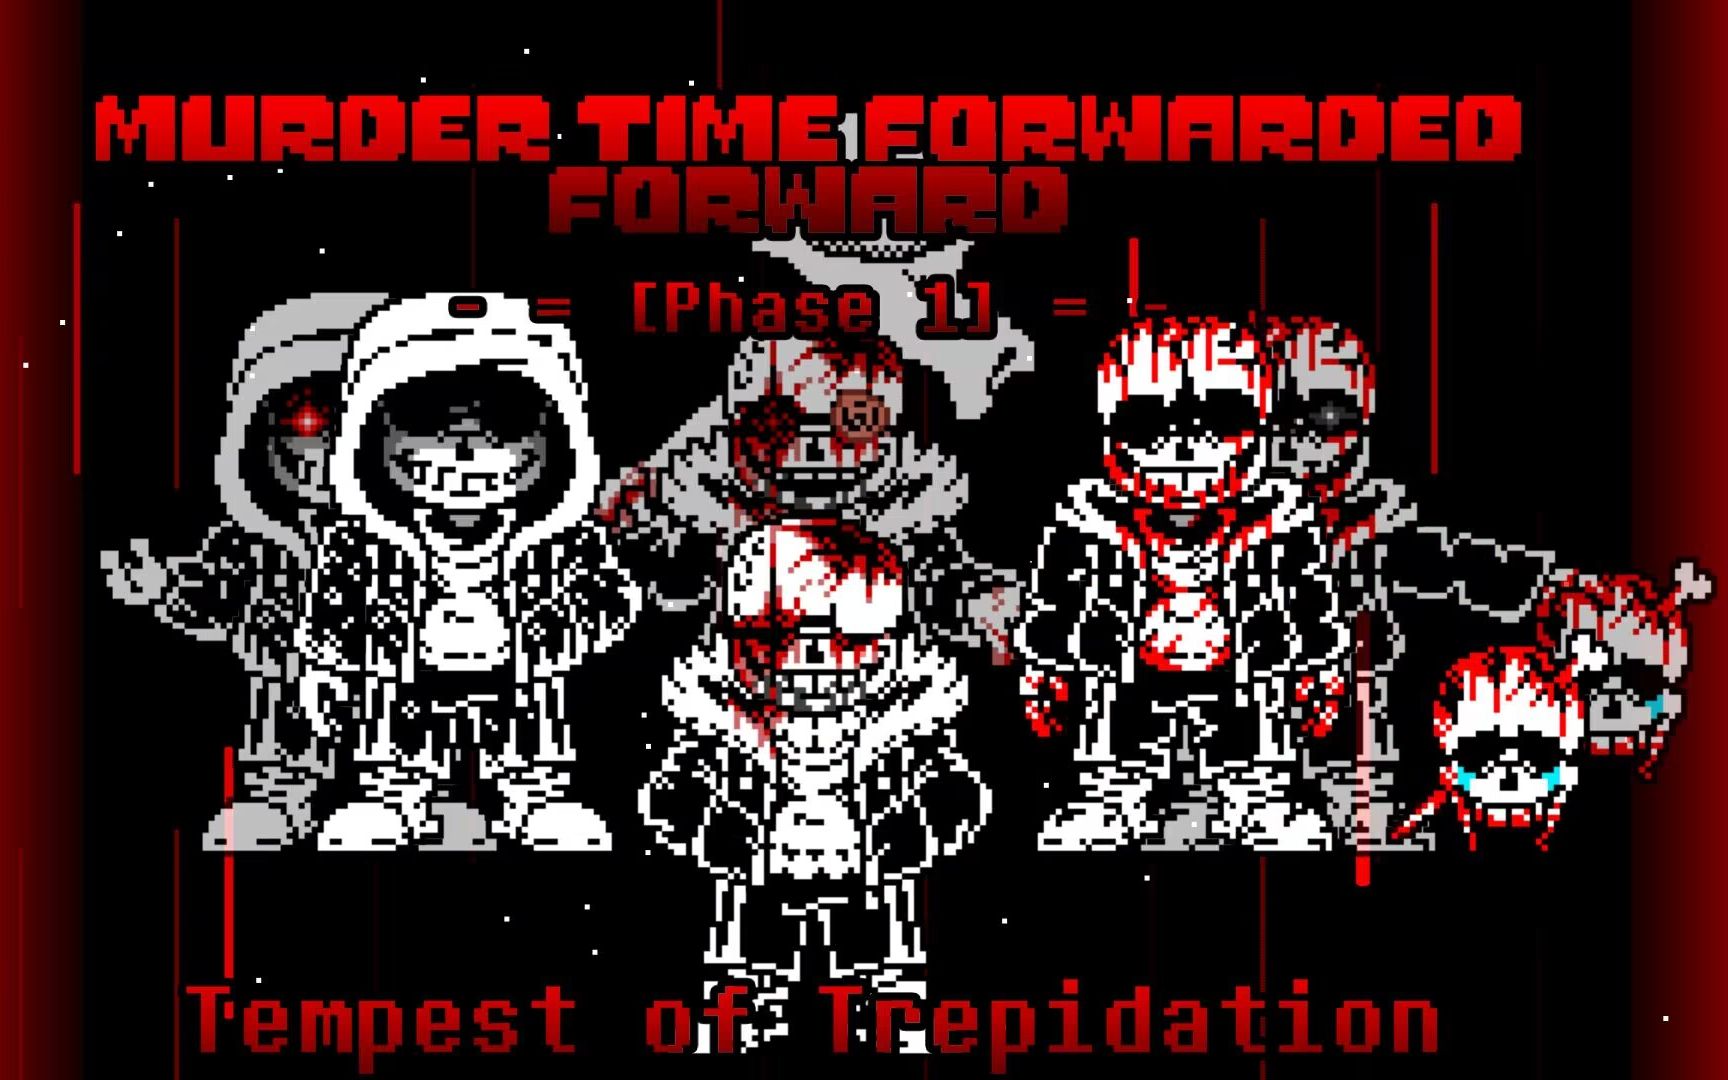 【1000粉庆】[Murder Time Forwarded Foward]- Phase 1 - Tempest of Trepidation